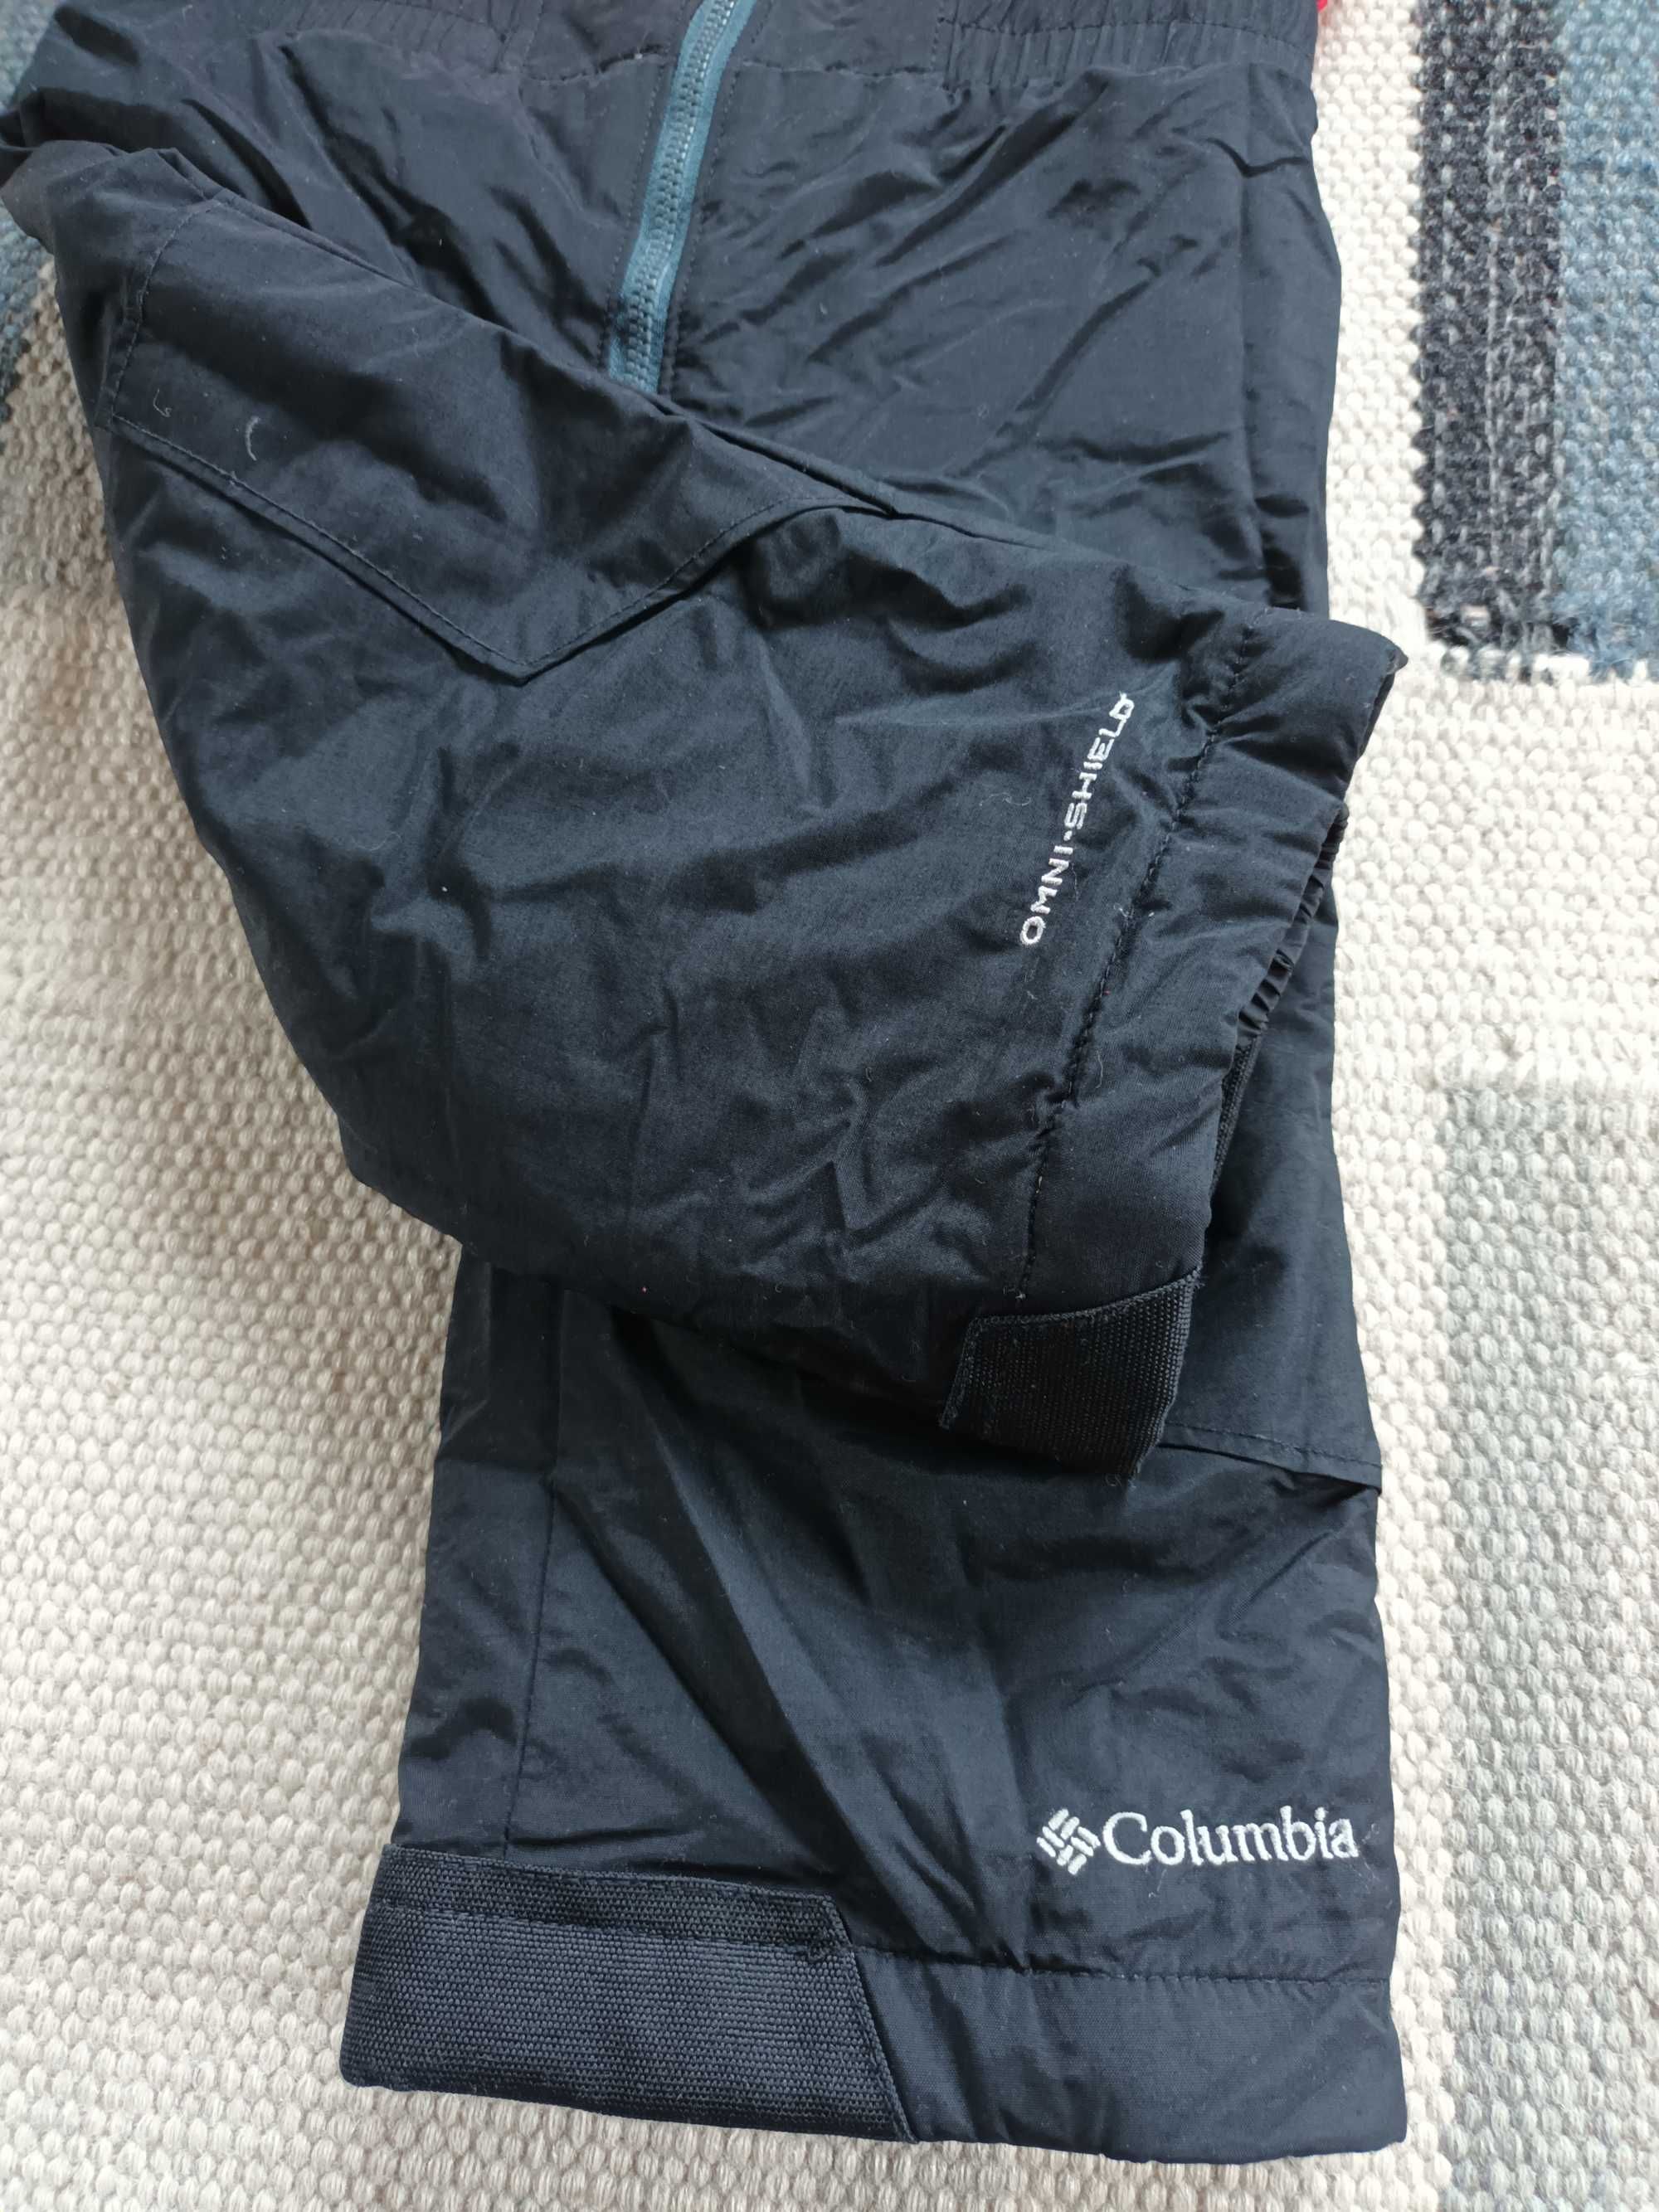 Salopeta/ pantaloni de schi Buga Columbia, marimea 86, 18 luni